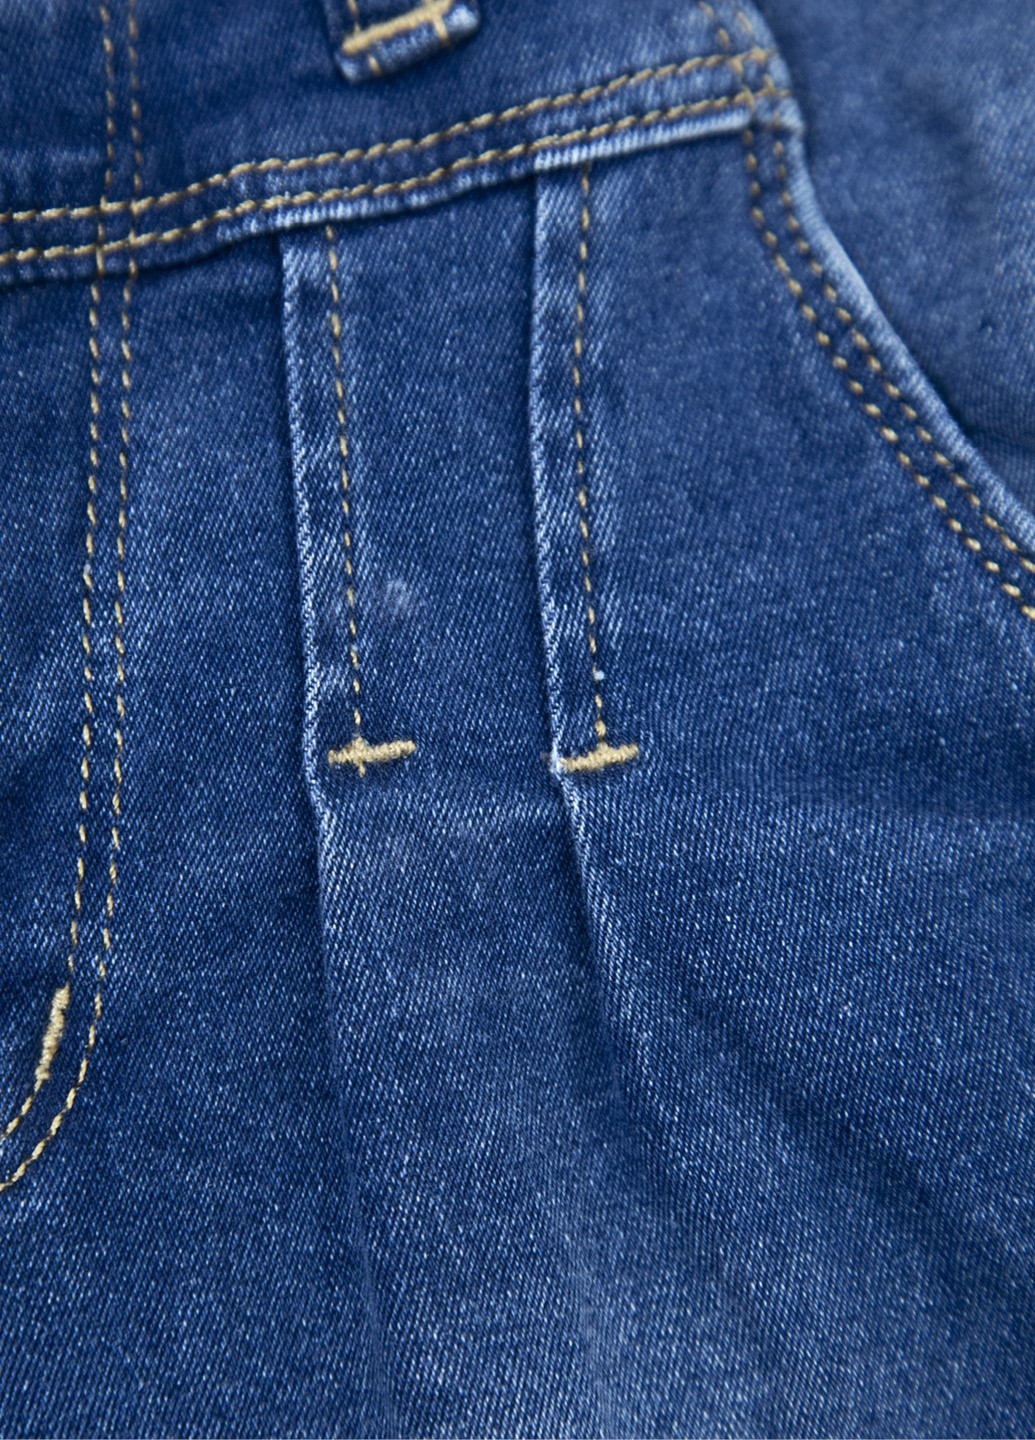 Синие демисезонные джинсы для девочек зауженные синие с кокеткой 11-15 Altun